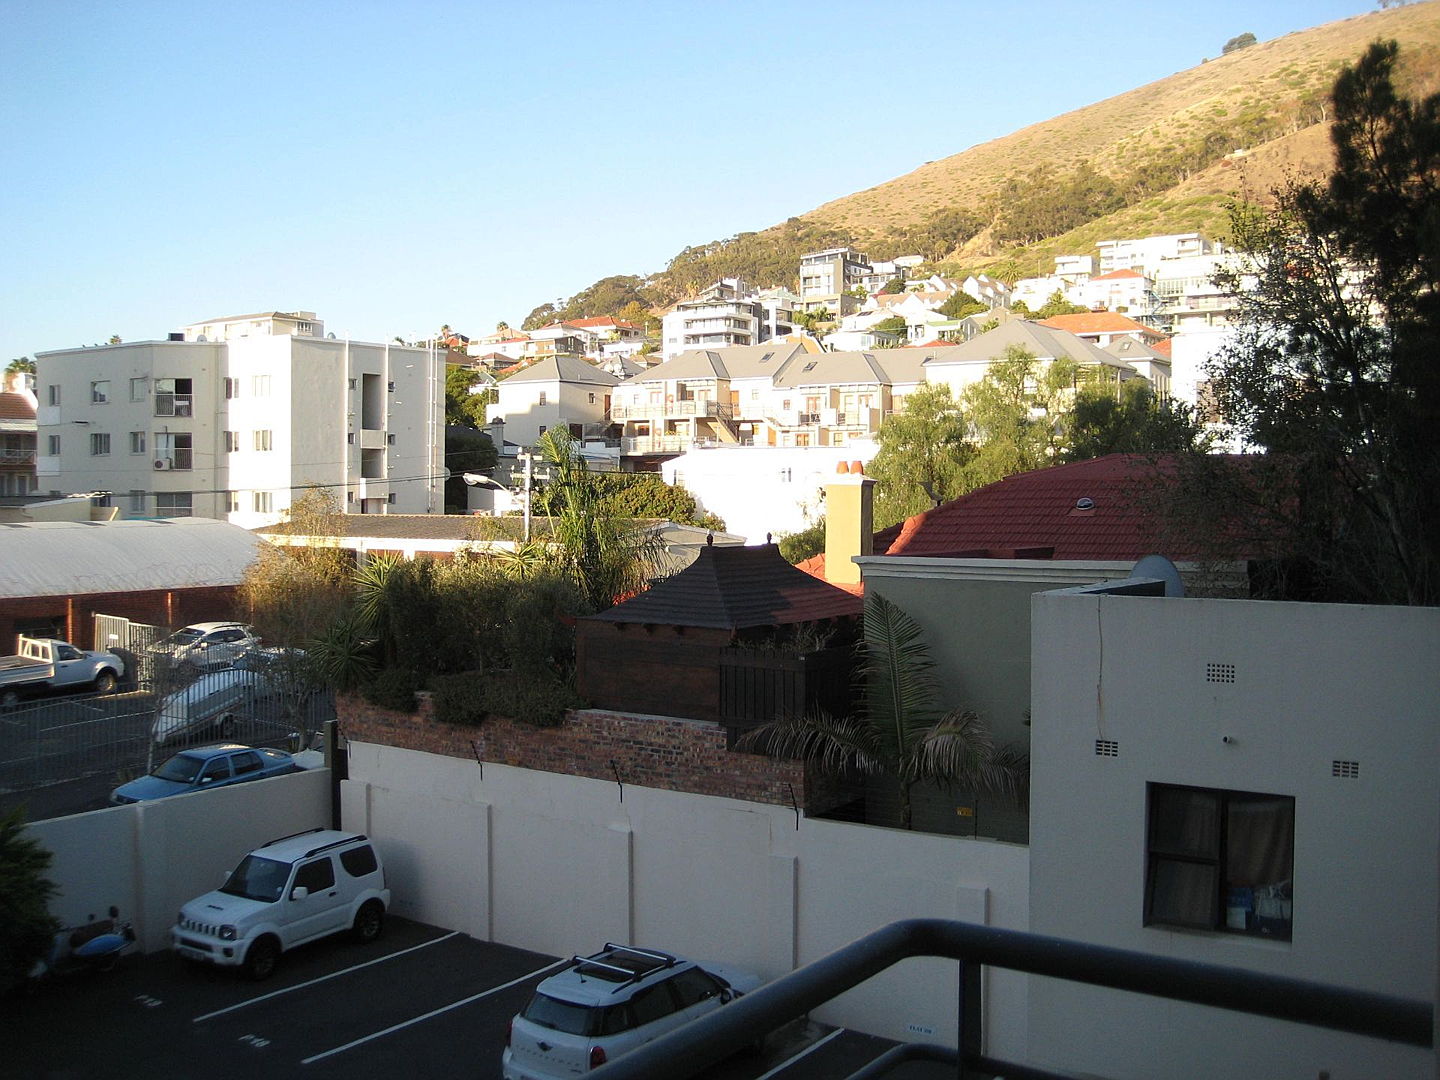  Cape Town
- ENV97737.jpg